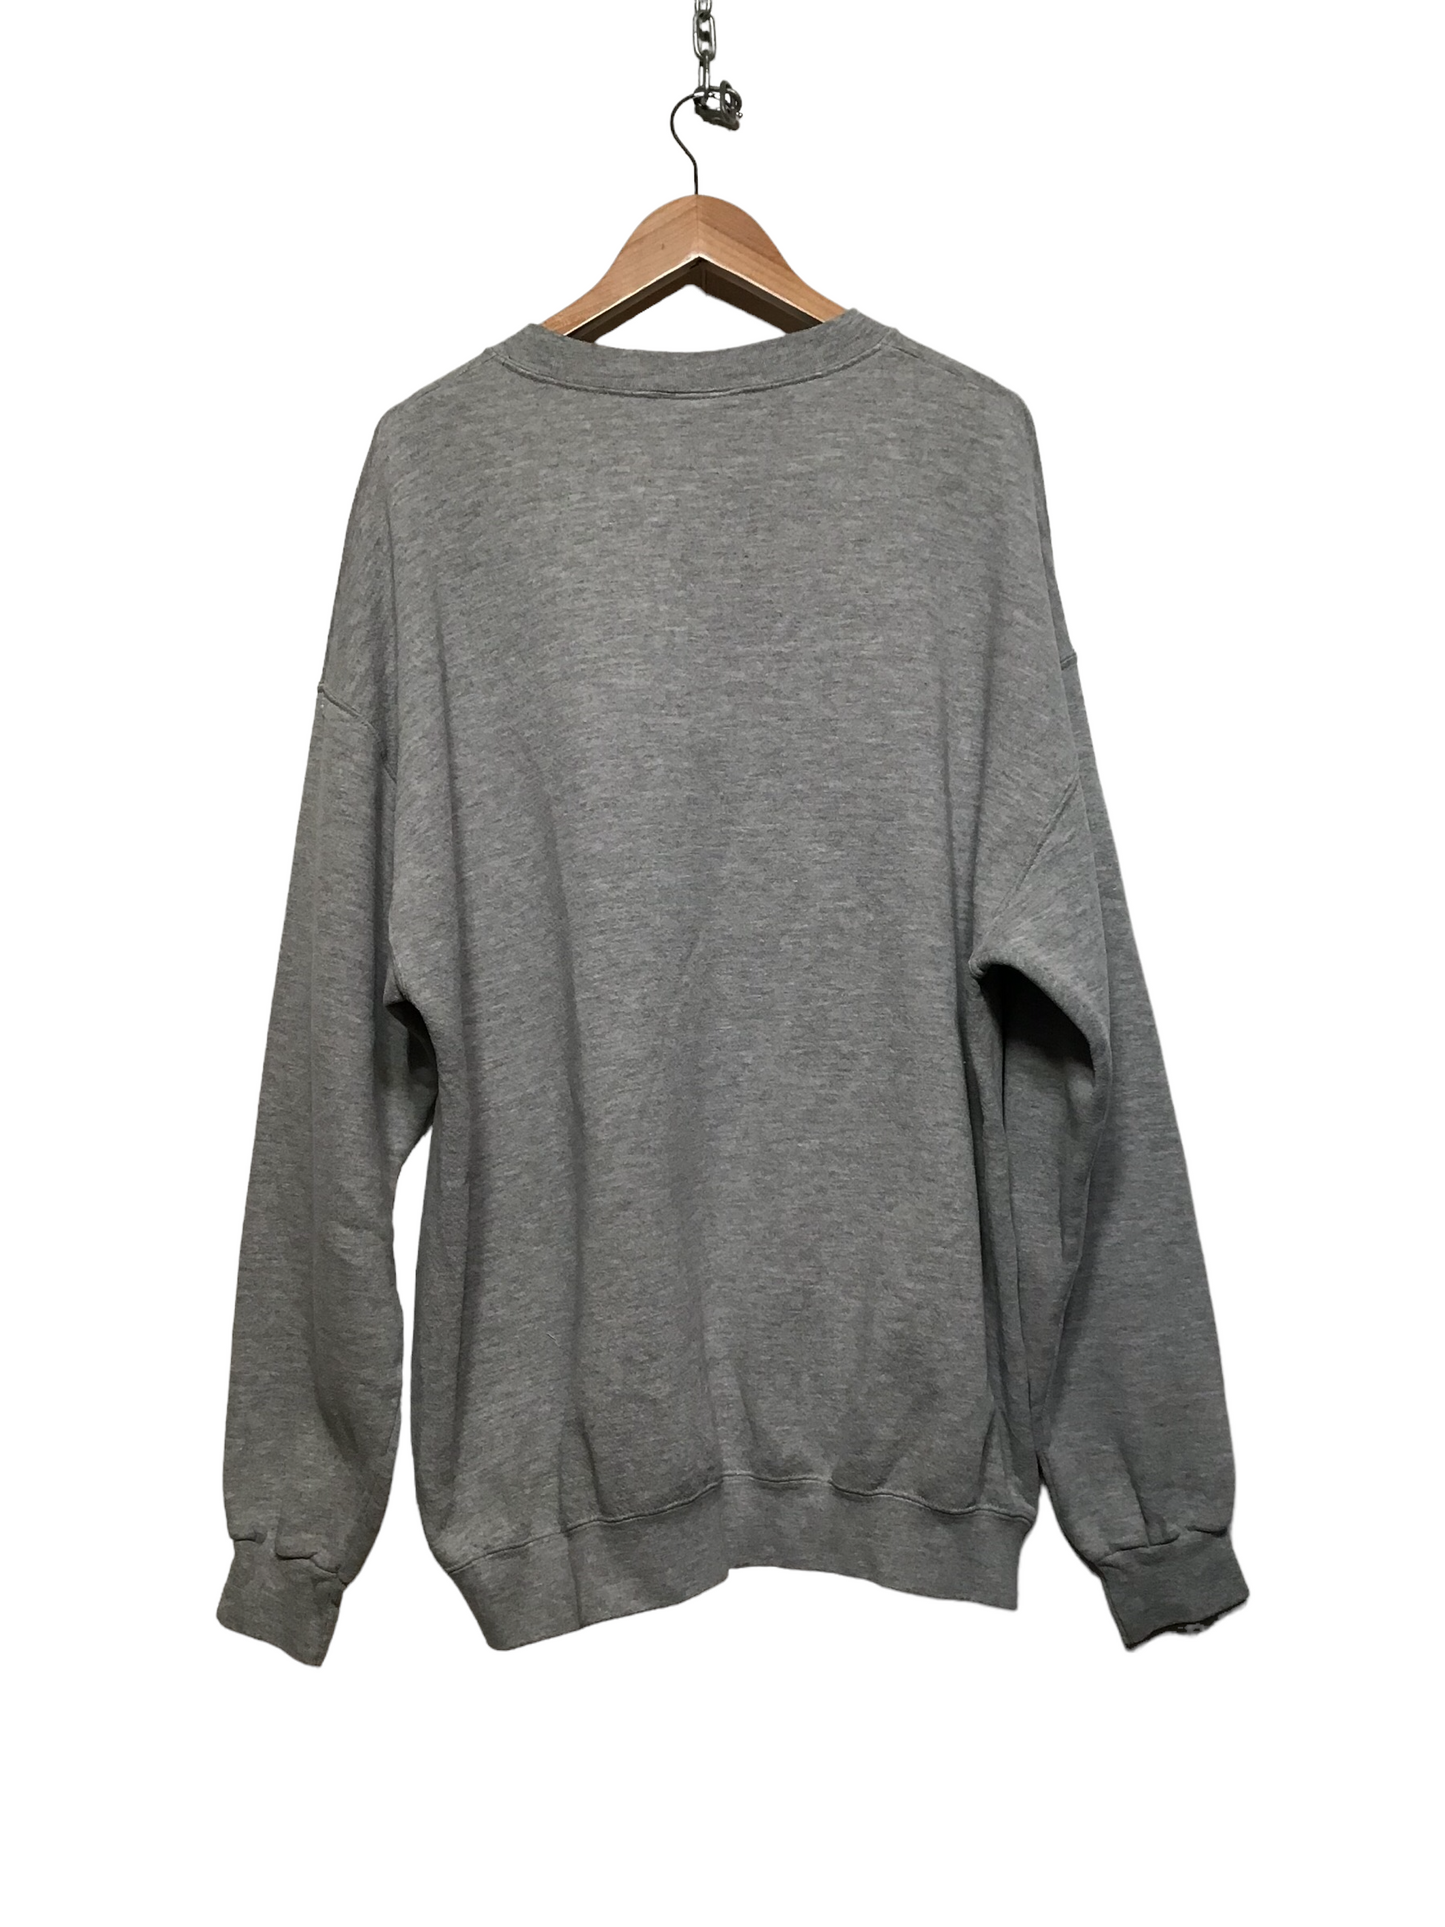 Eeyore Christmas Sweatshirt (Size XL)